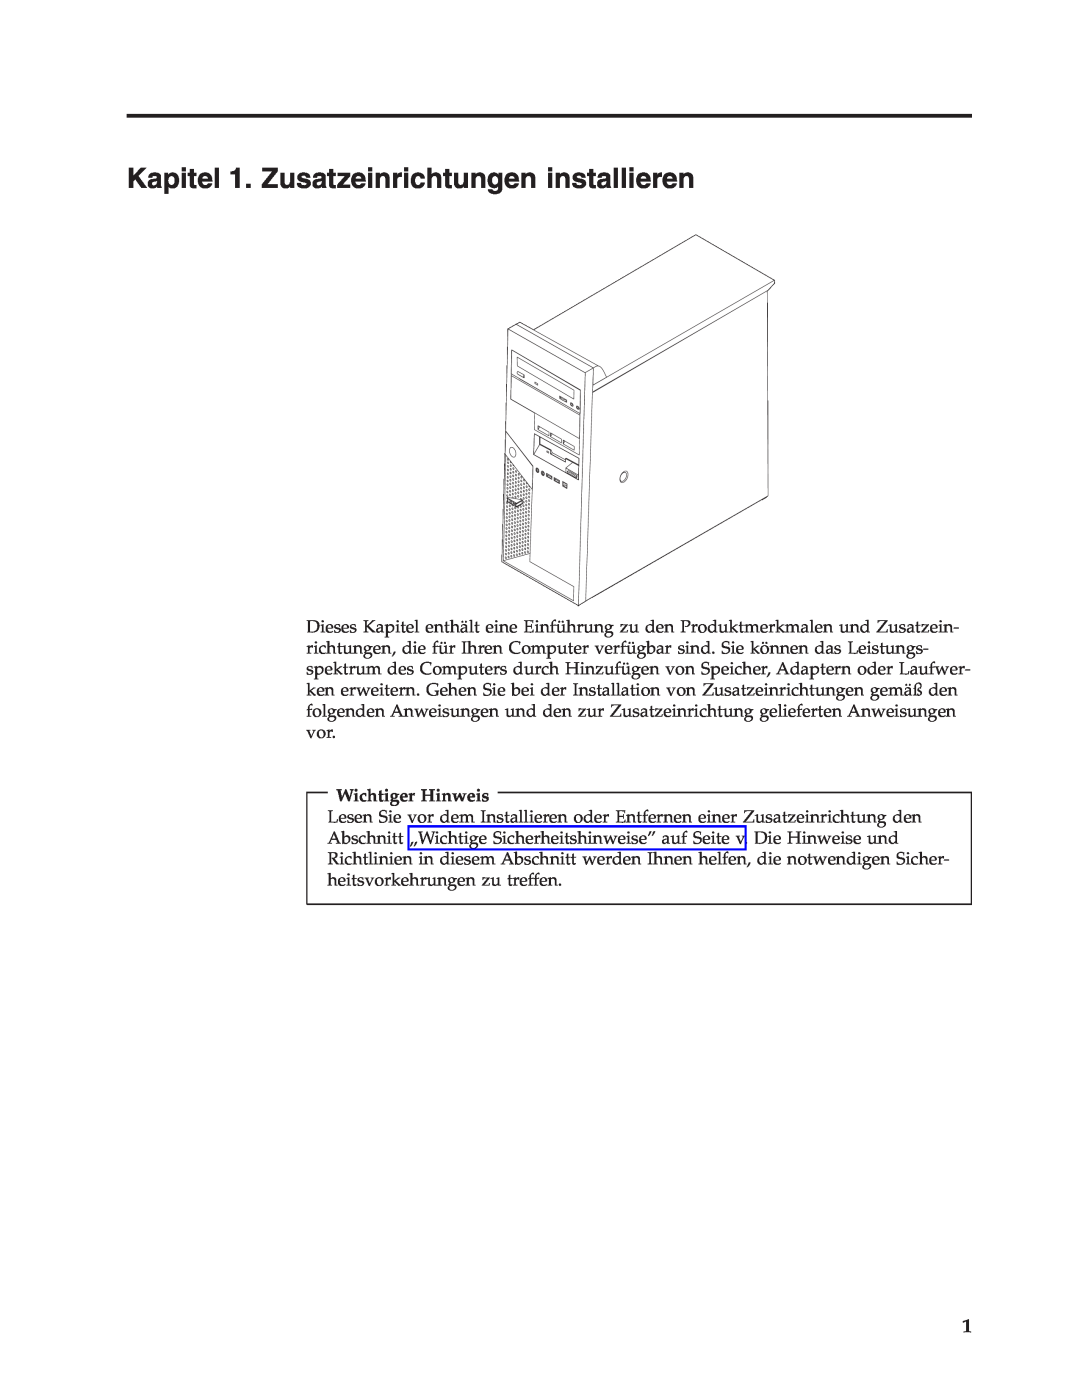 IBM 9213, 9212 manual Kapitel 1. Zusatzeinrichtungen installieren, Wichtiger Hinweis 